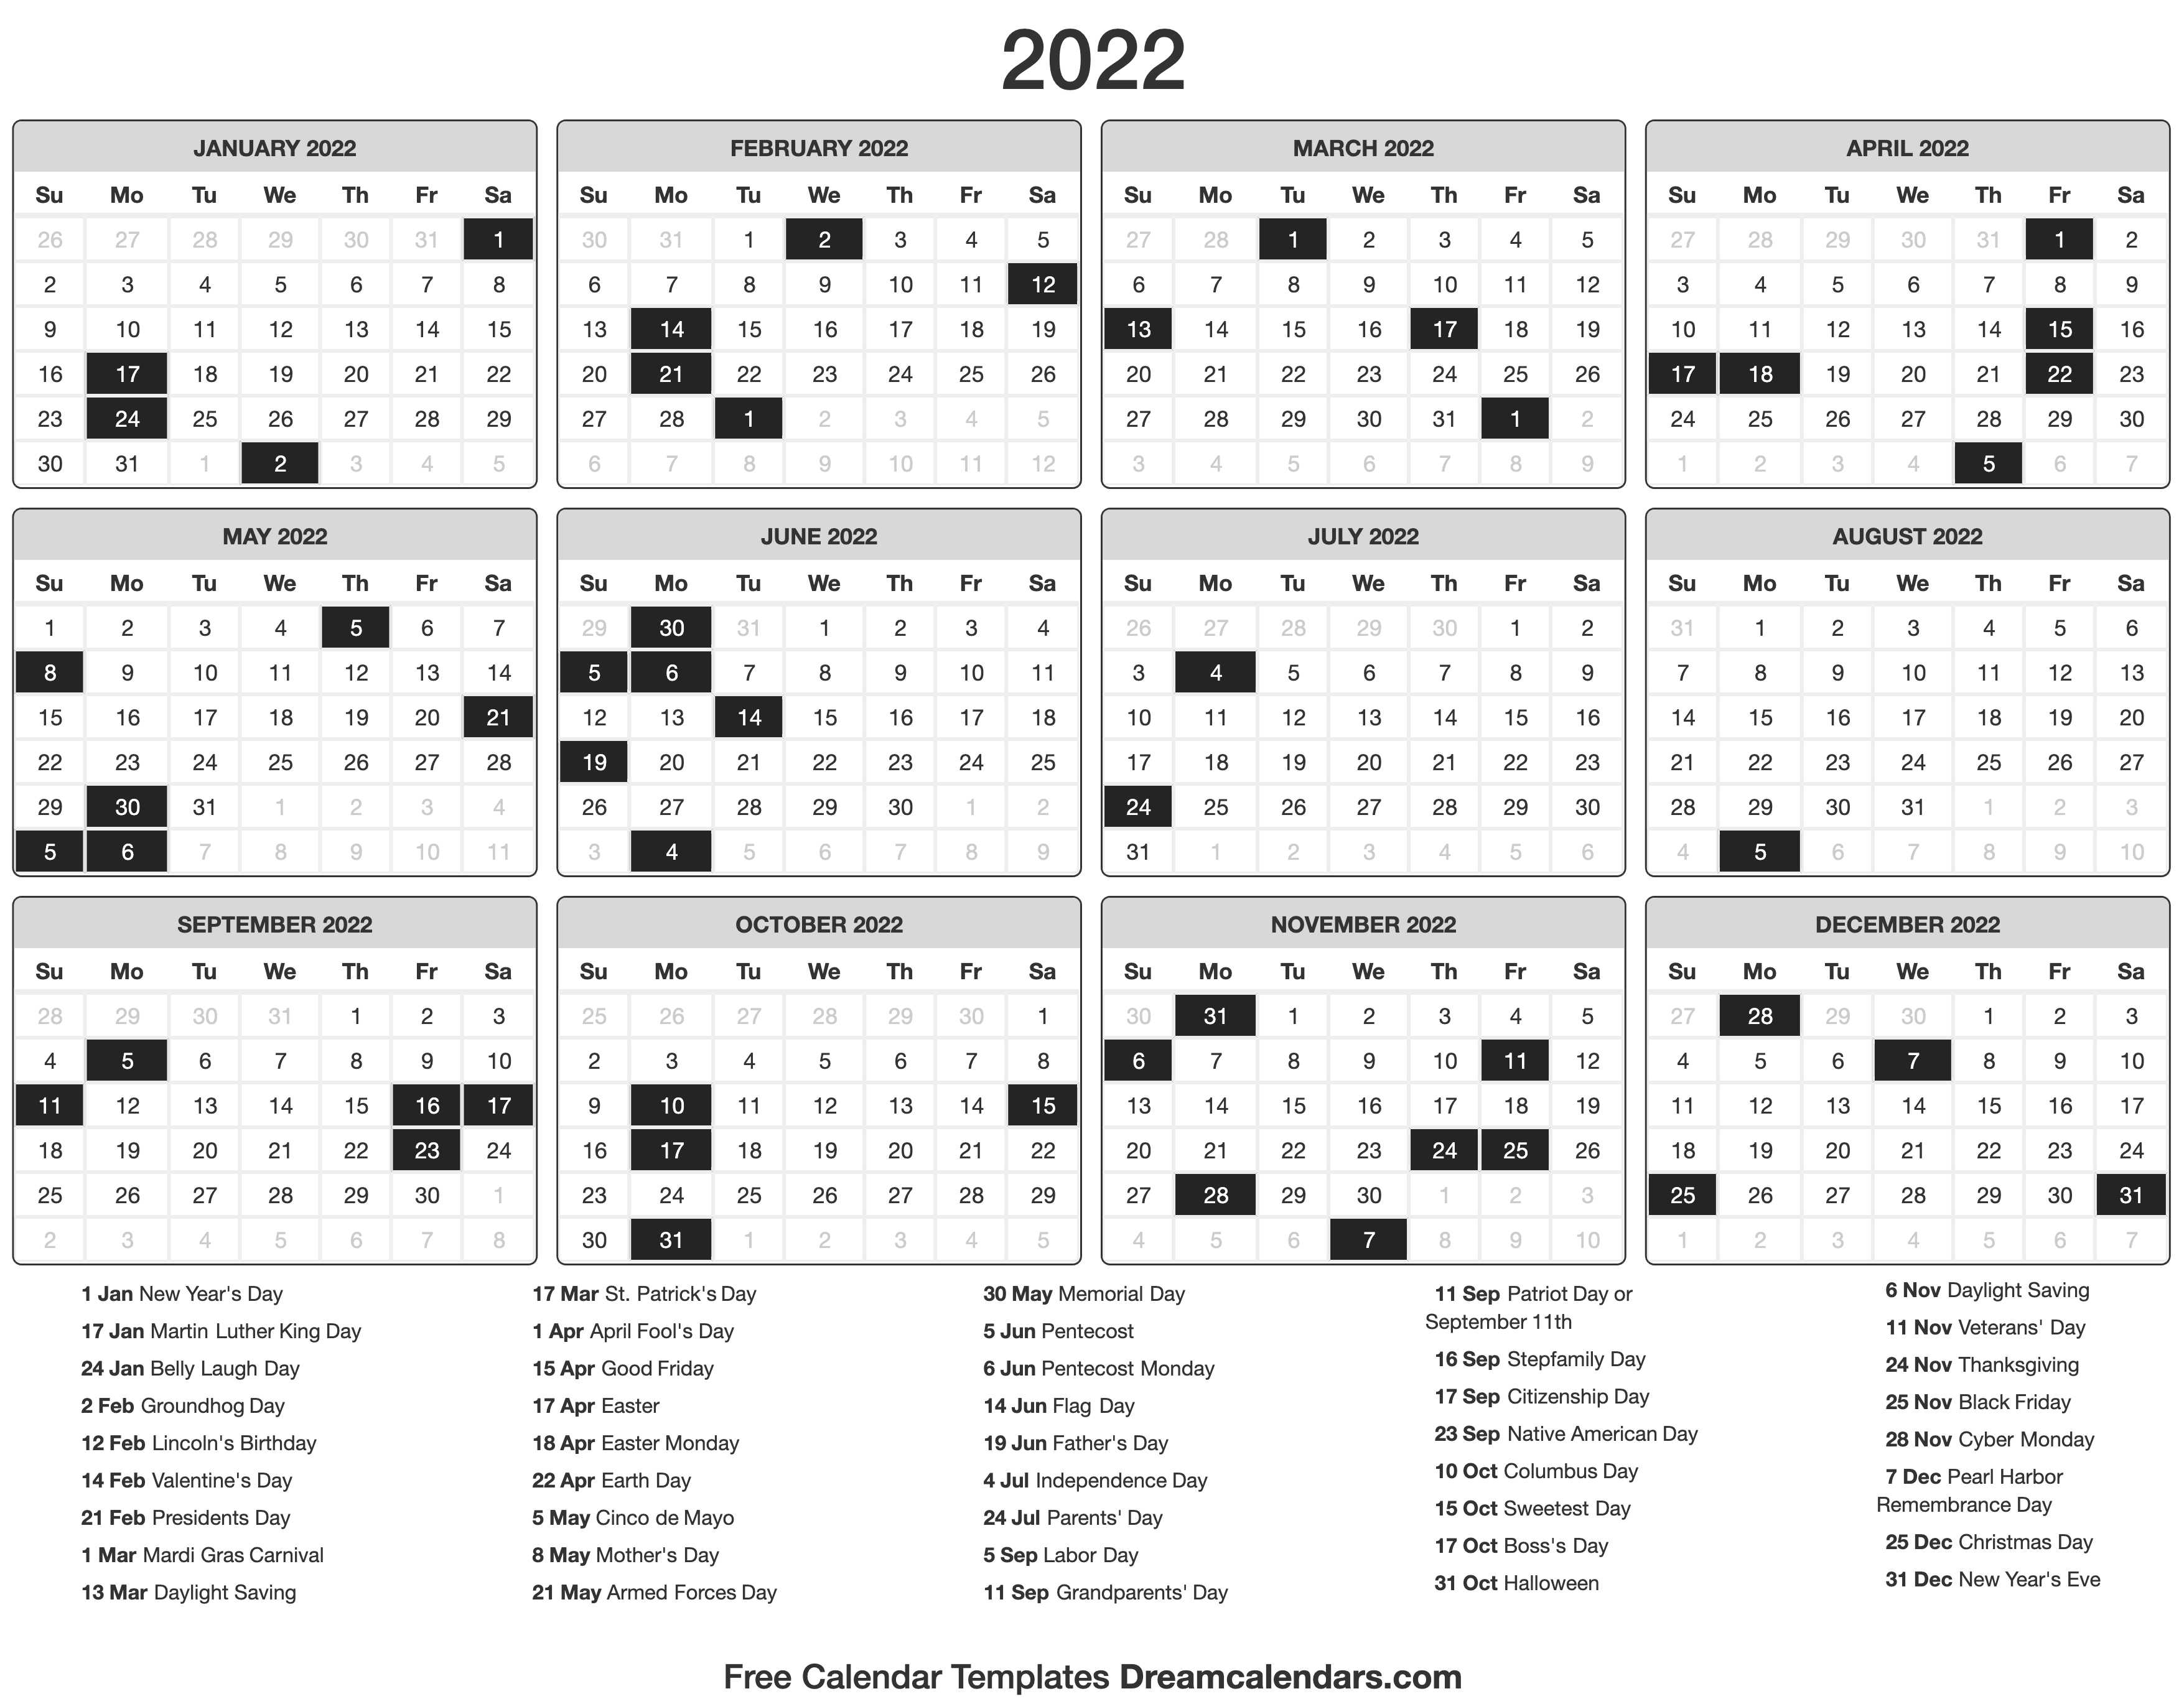 Labor Day Weekend 2022 Calendar 2022 Calendar